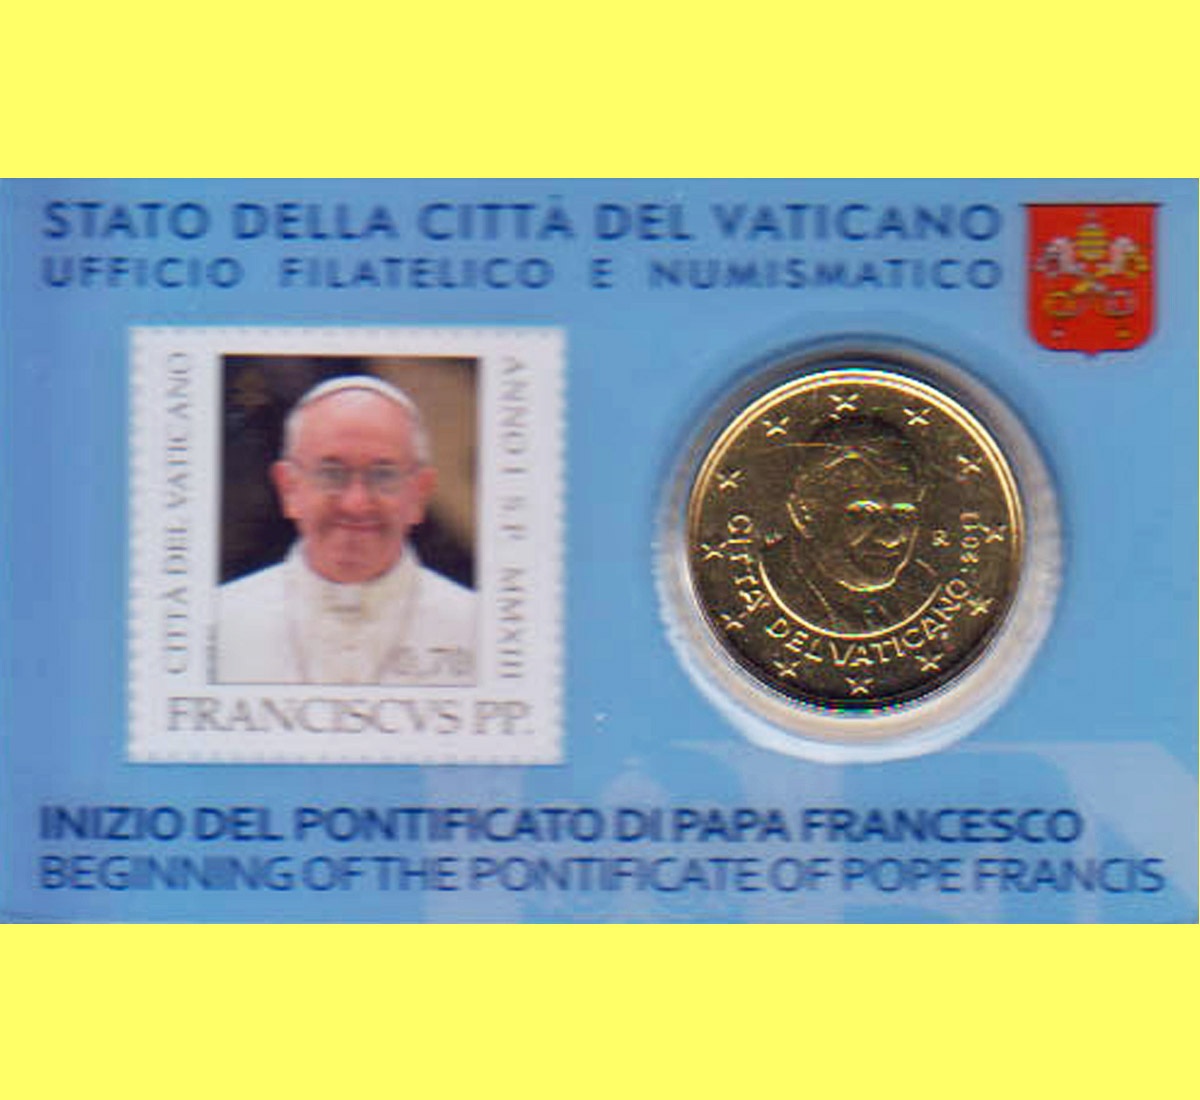  Offiz. 50 Cent Coincard mit Briefmarke 0,70€ Vatikan 2013 nur 35.000St!   